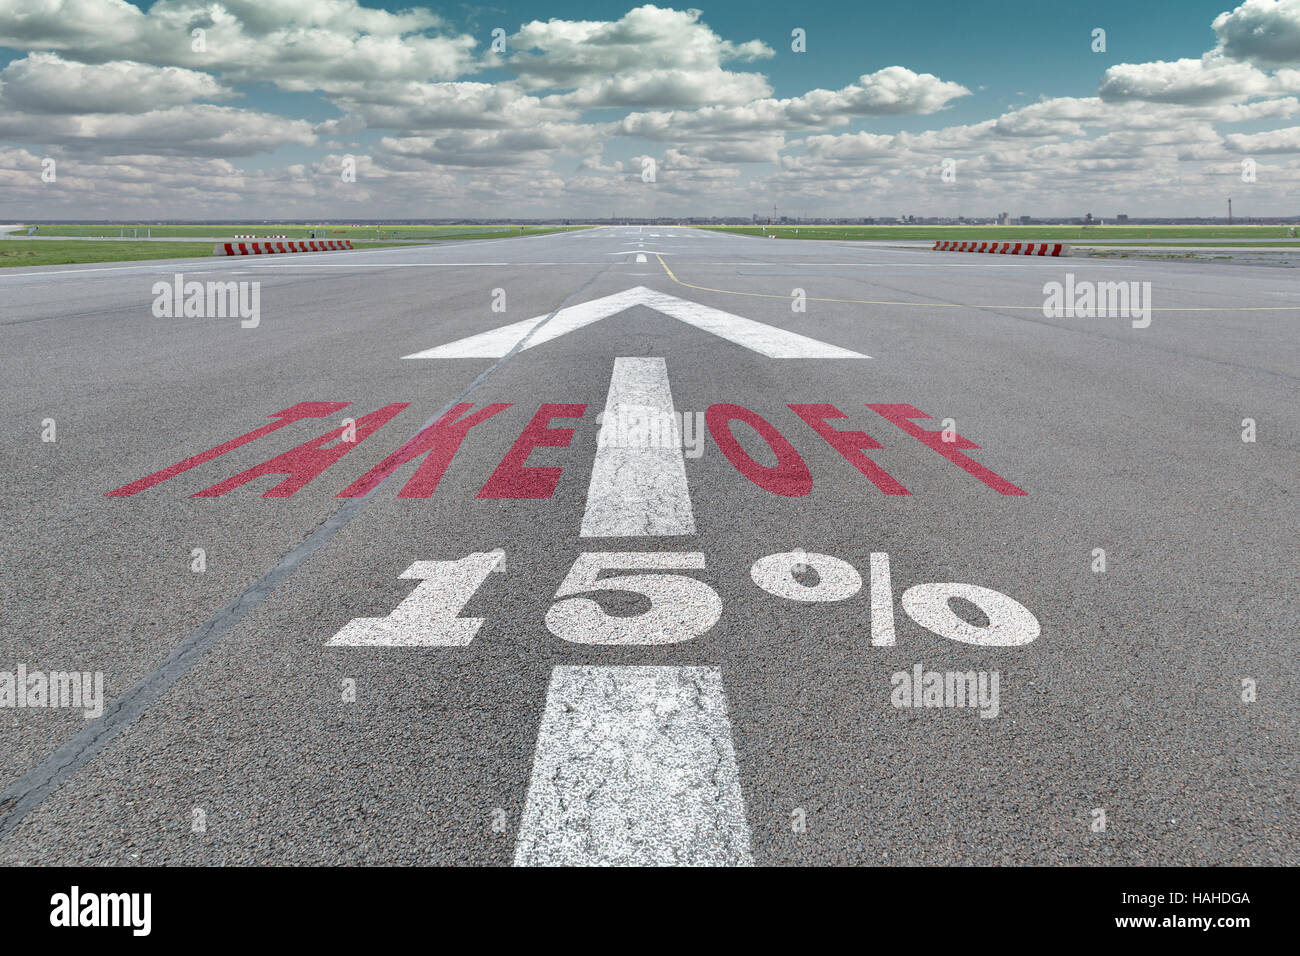 La piste de l'aéroport avec la flèche d'orientation, du décollage et de 15 pour cent sur l'asphalte signe Banque D'Images